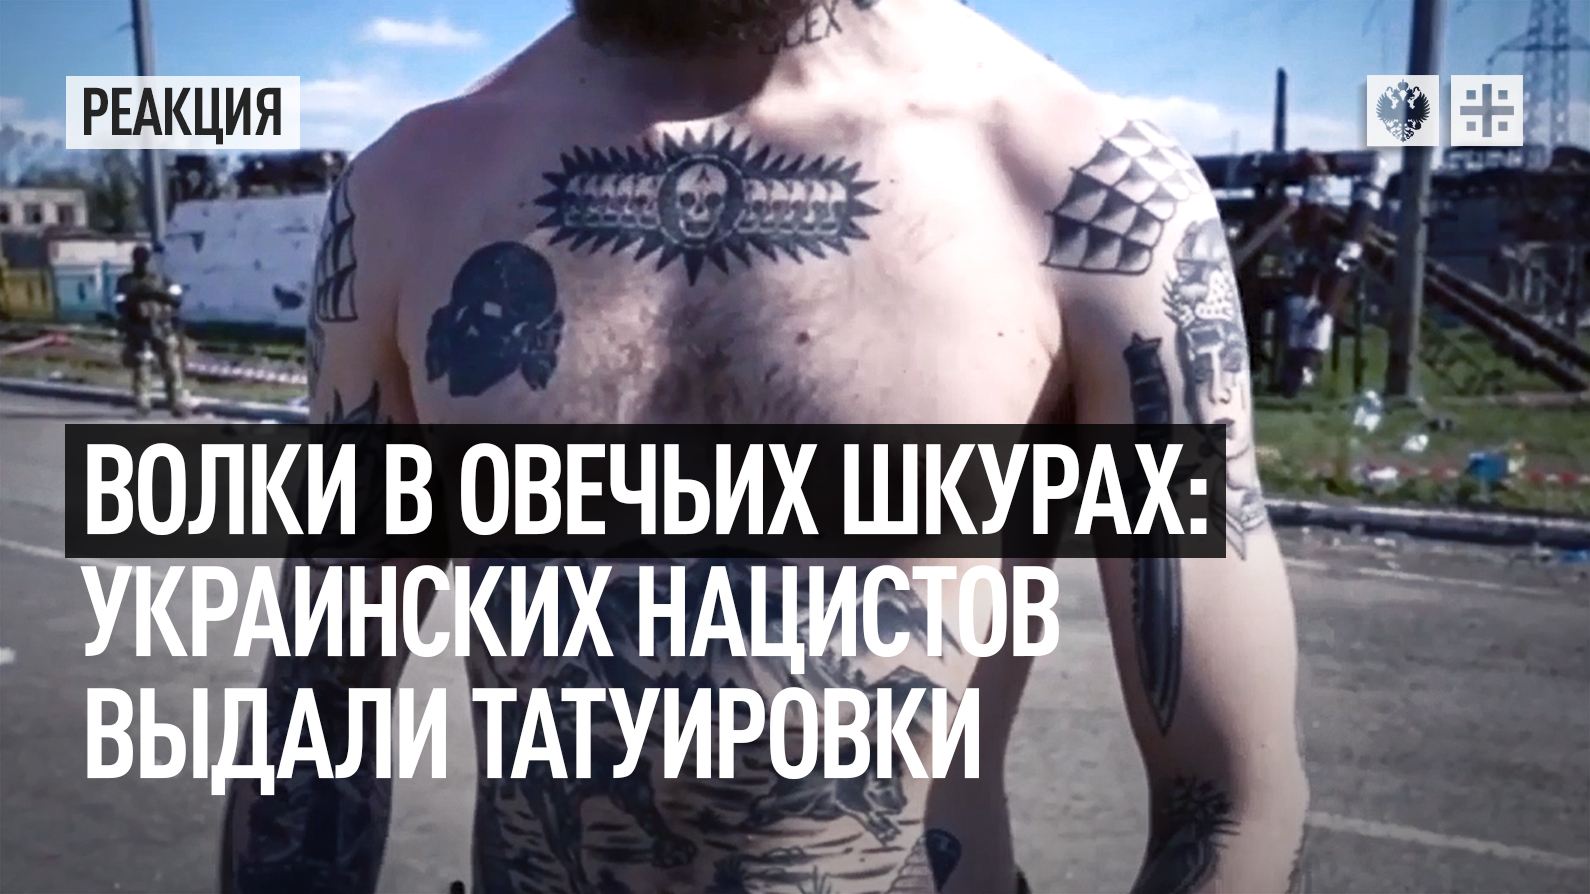 Татуировки украинских националистов